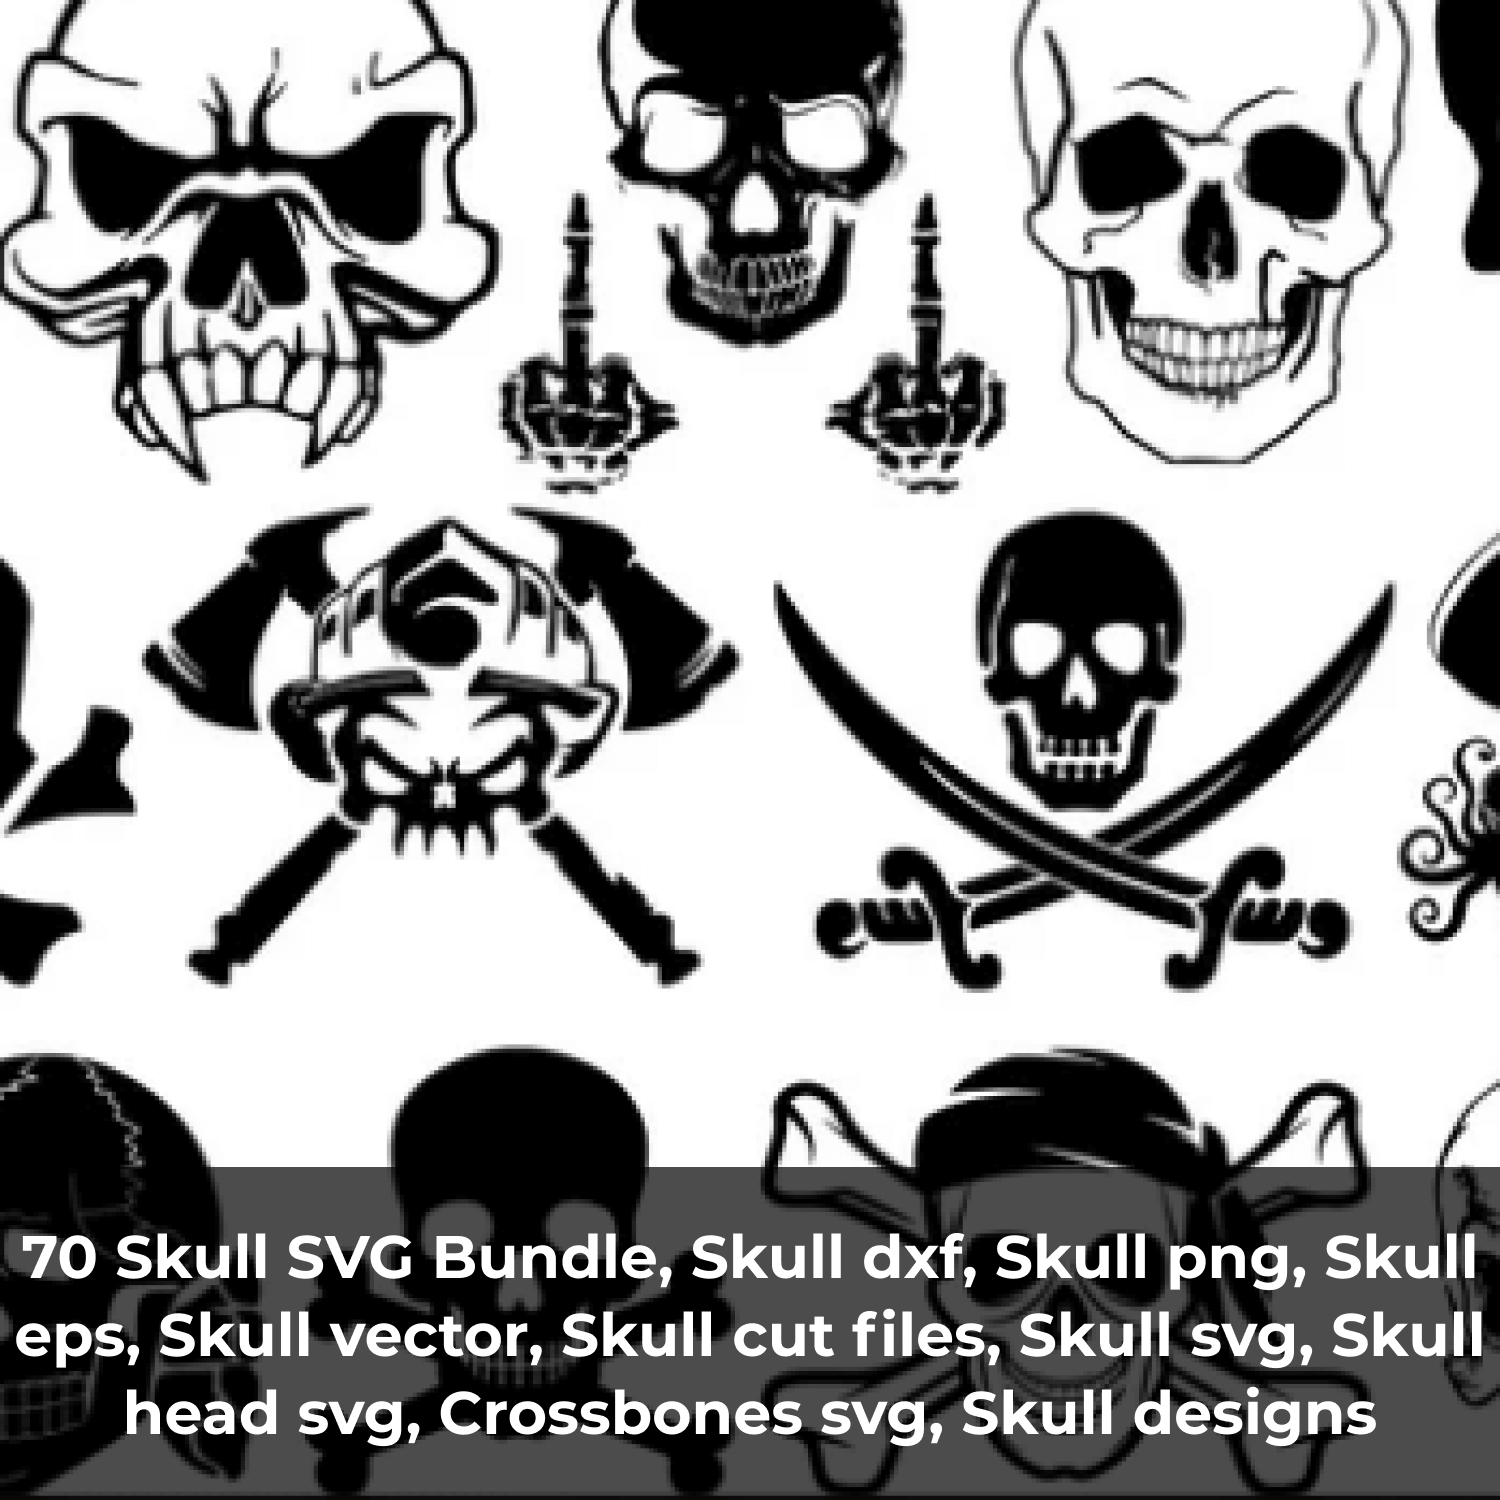 Skull Cut Files.